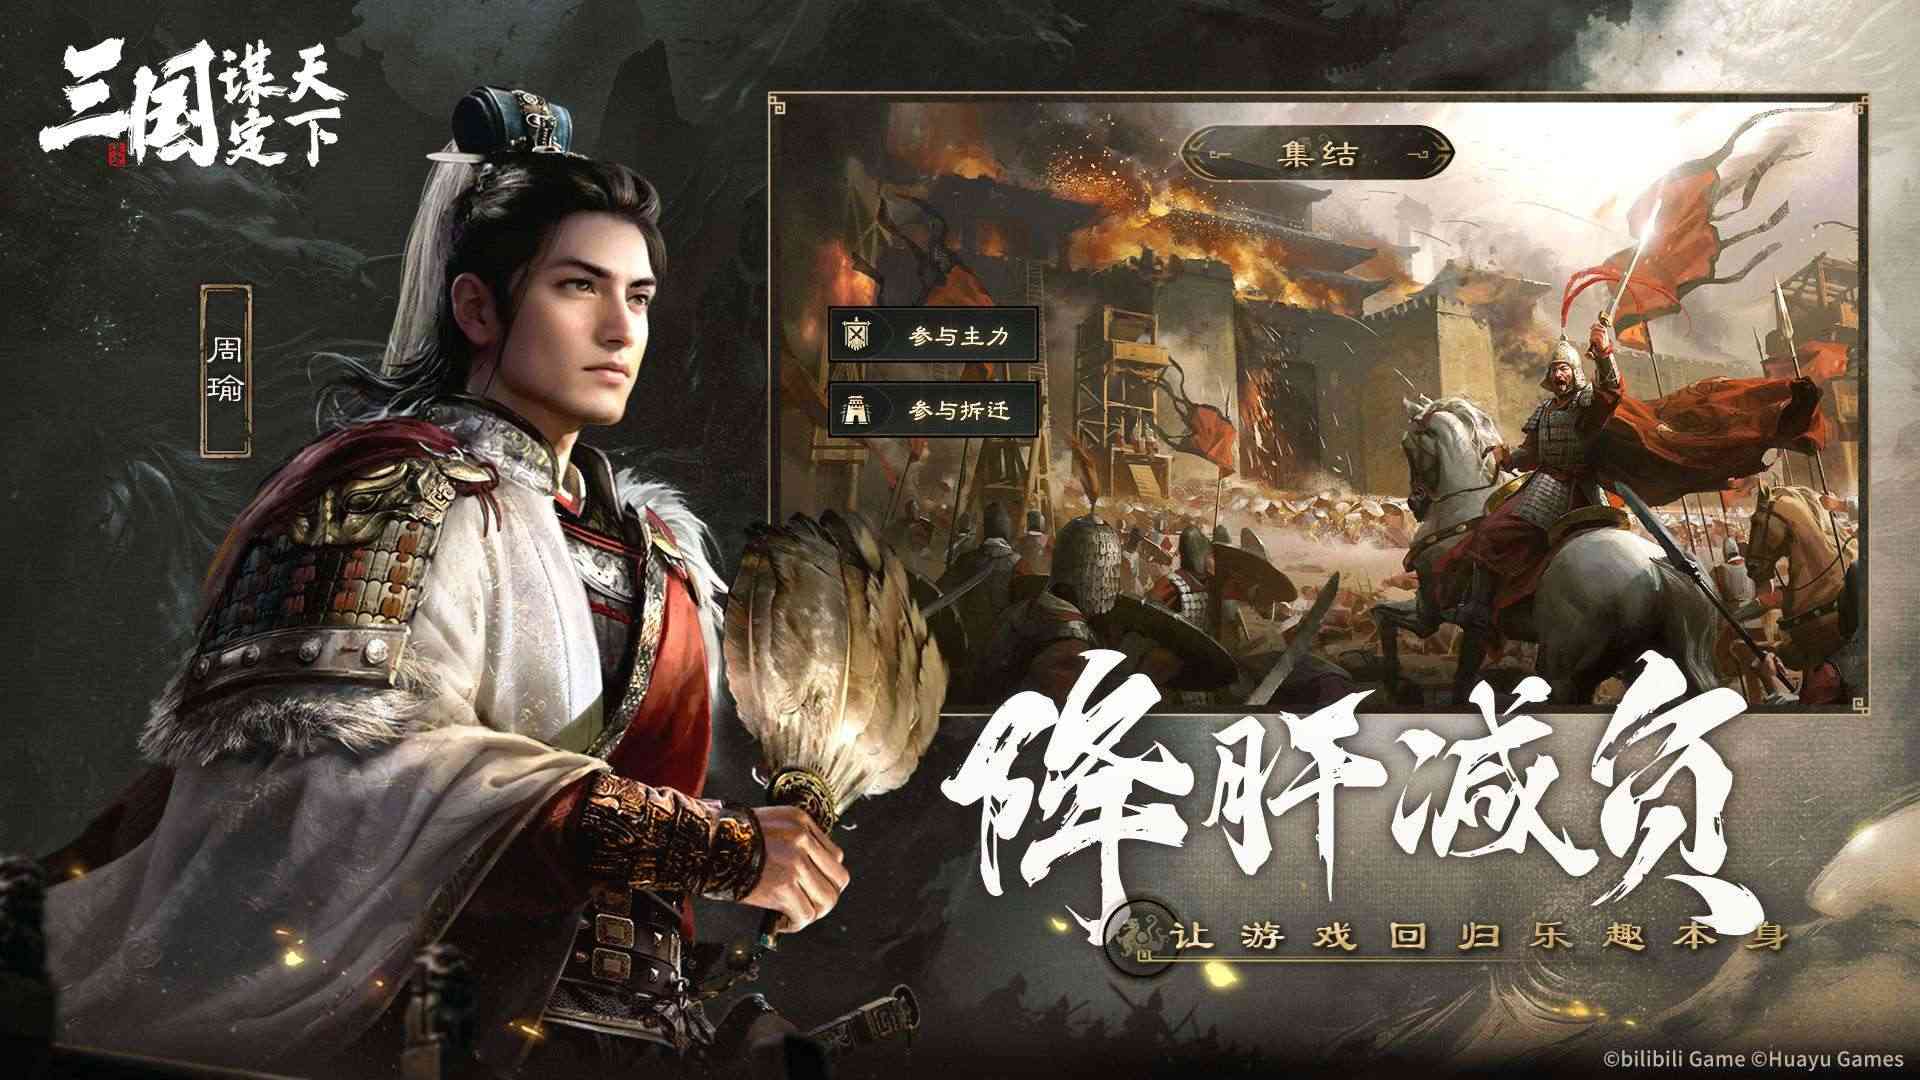 Tam Quốc Mưu Định Thiên Hạ - Game mobile SLG chiến thuật đầy hứa hẹn của Bilibili